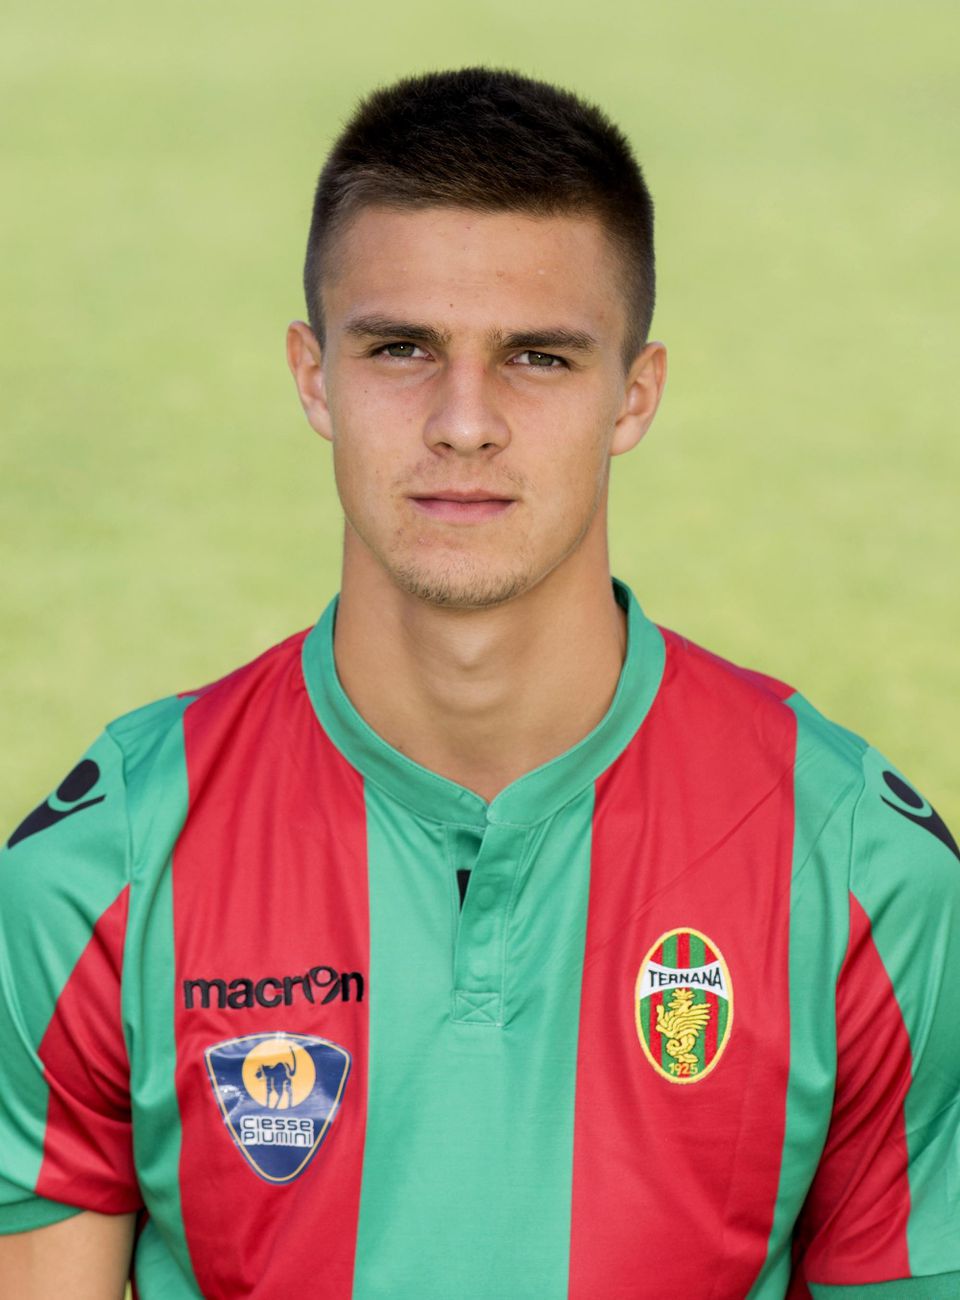 Martin Valjent z Ternany Calcio